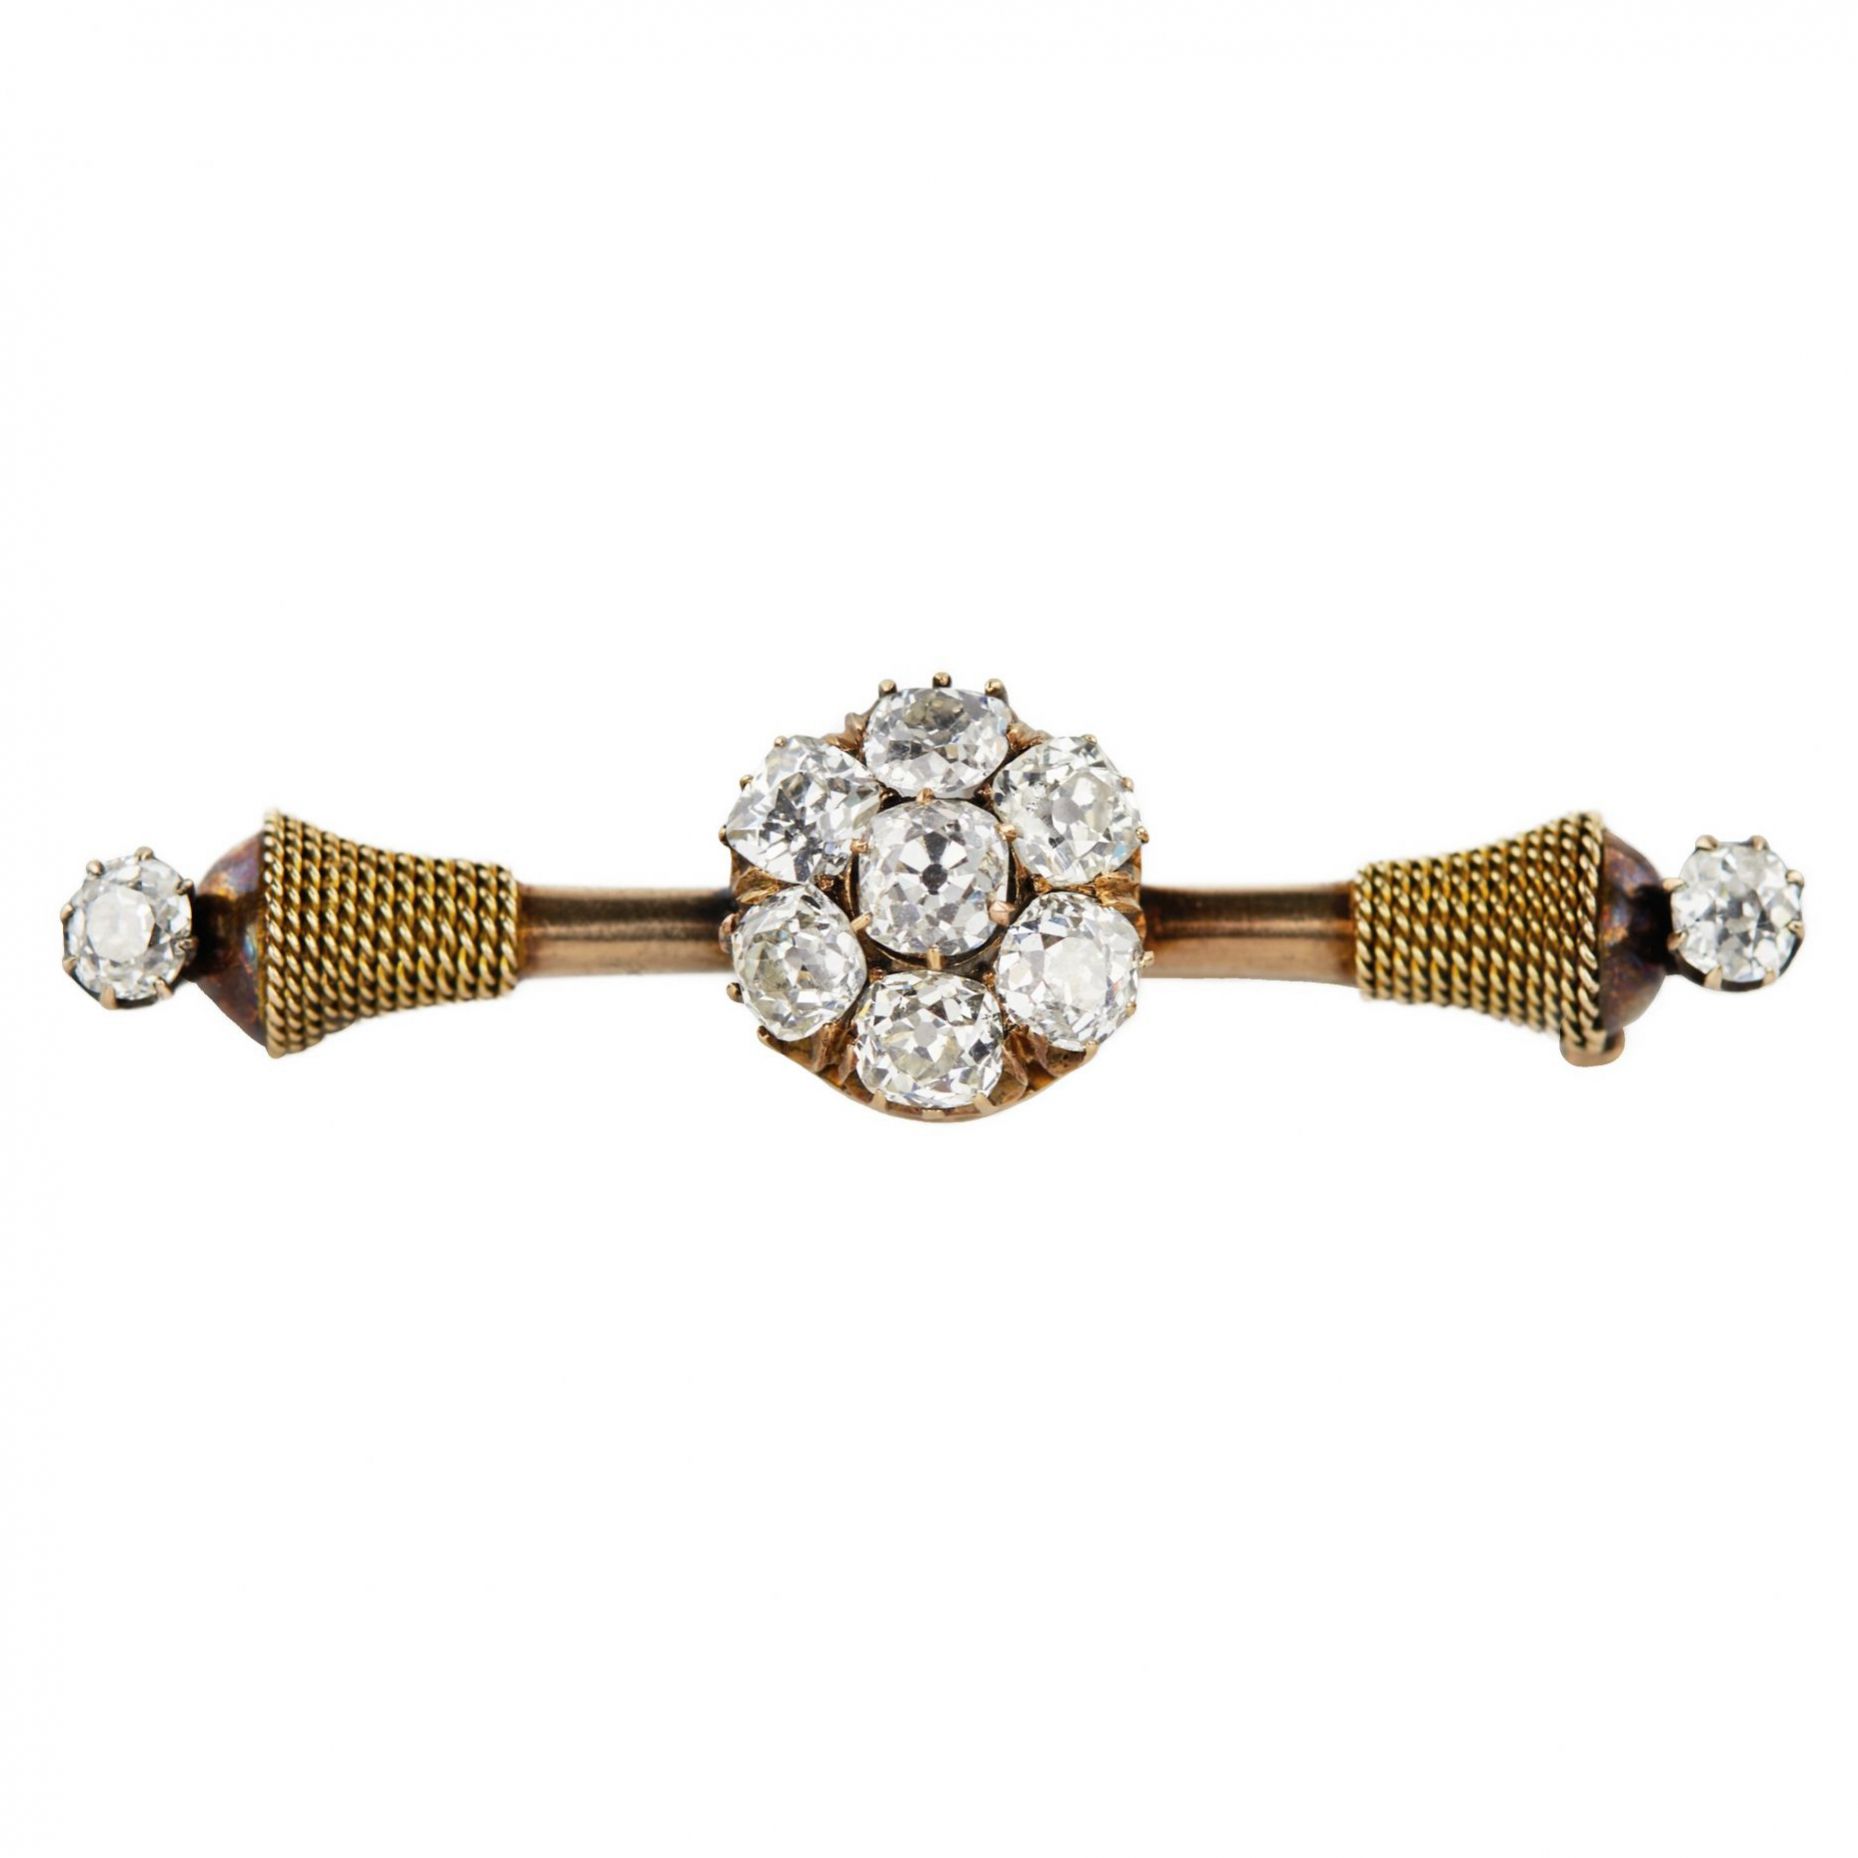 Élégante-broche-russe-en-or-valeur-titrée-56-avec-diamants-Saint-Pétersbourg-1908-1917-